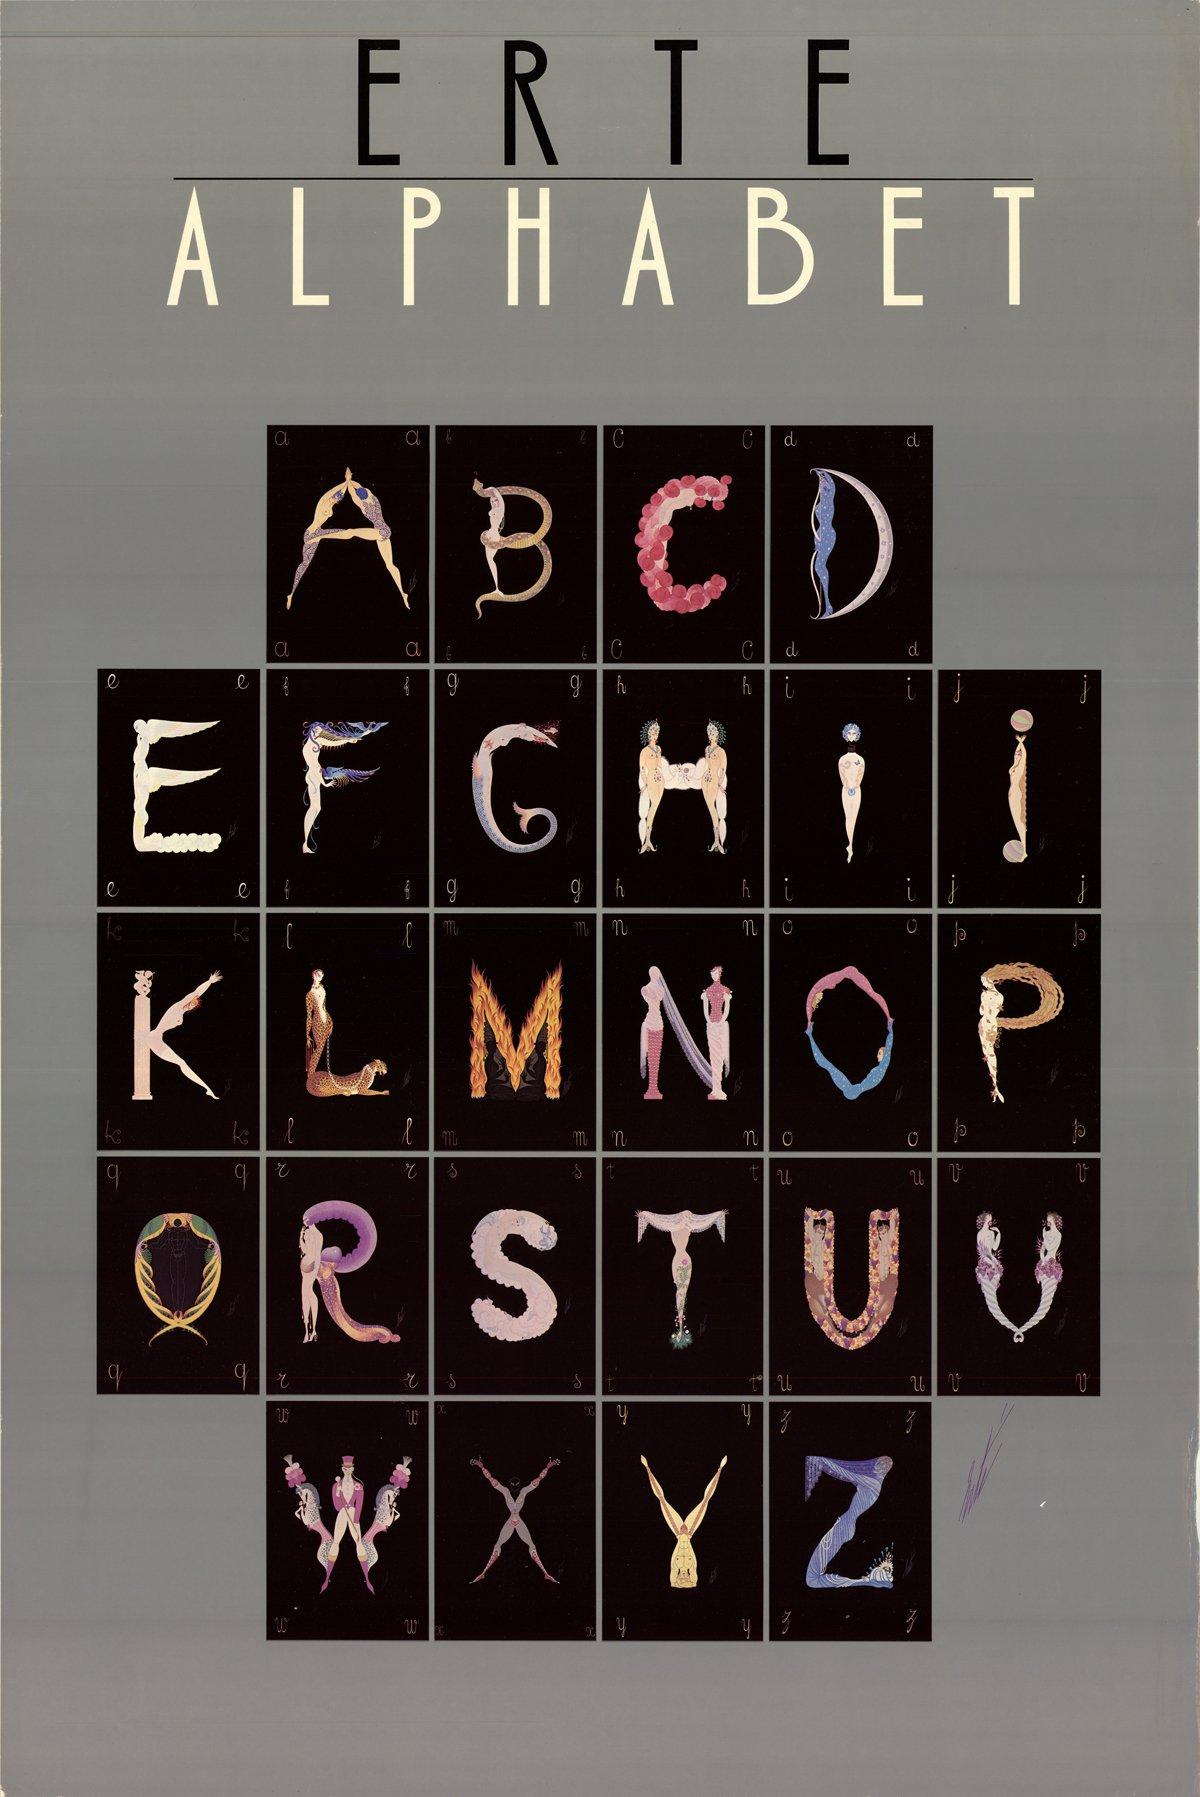 1977 After Erte 'Alphabet' Art Deco Multicolor, Gray Offset Lithograph - Print by Erté